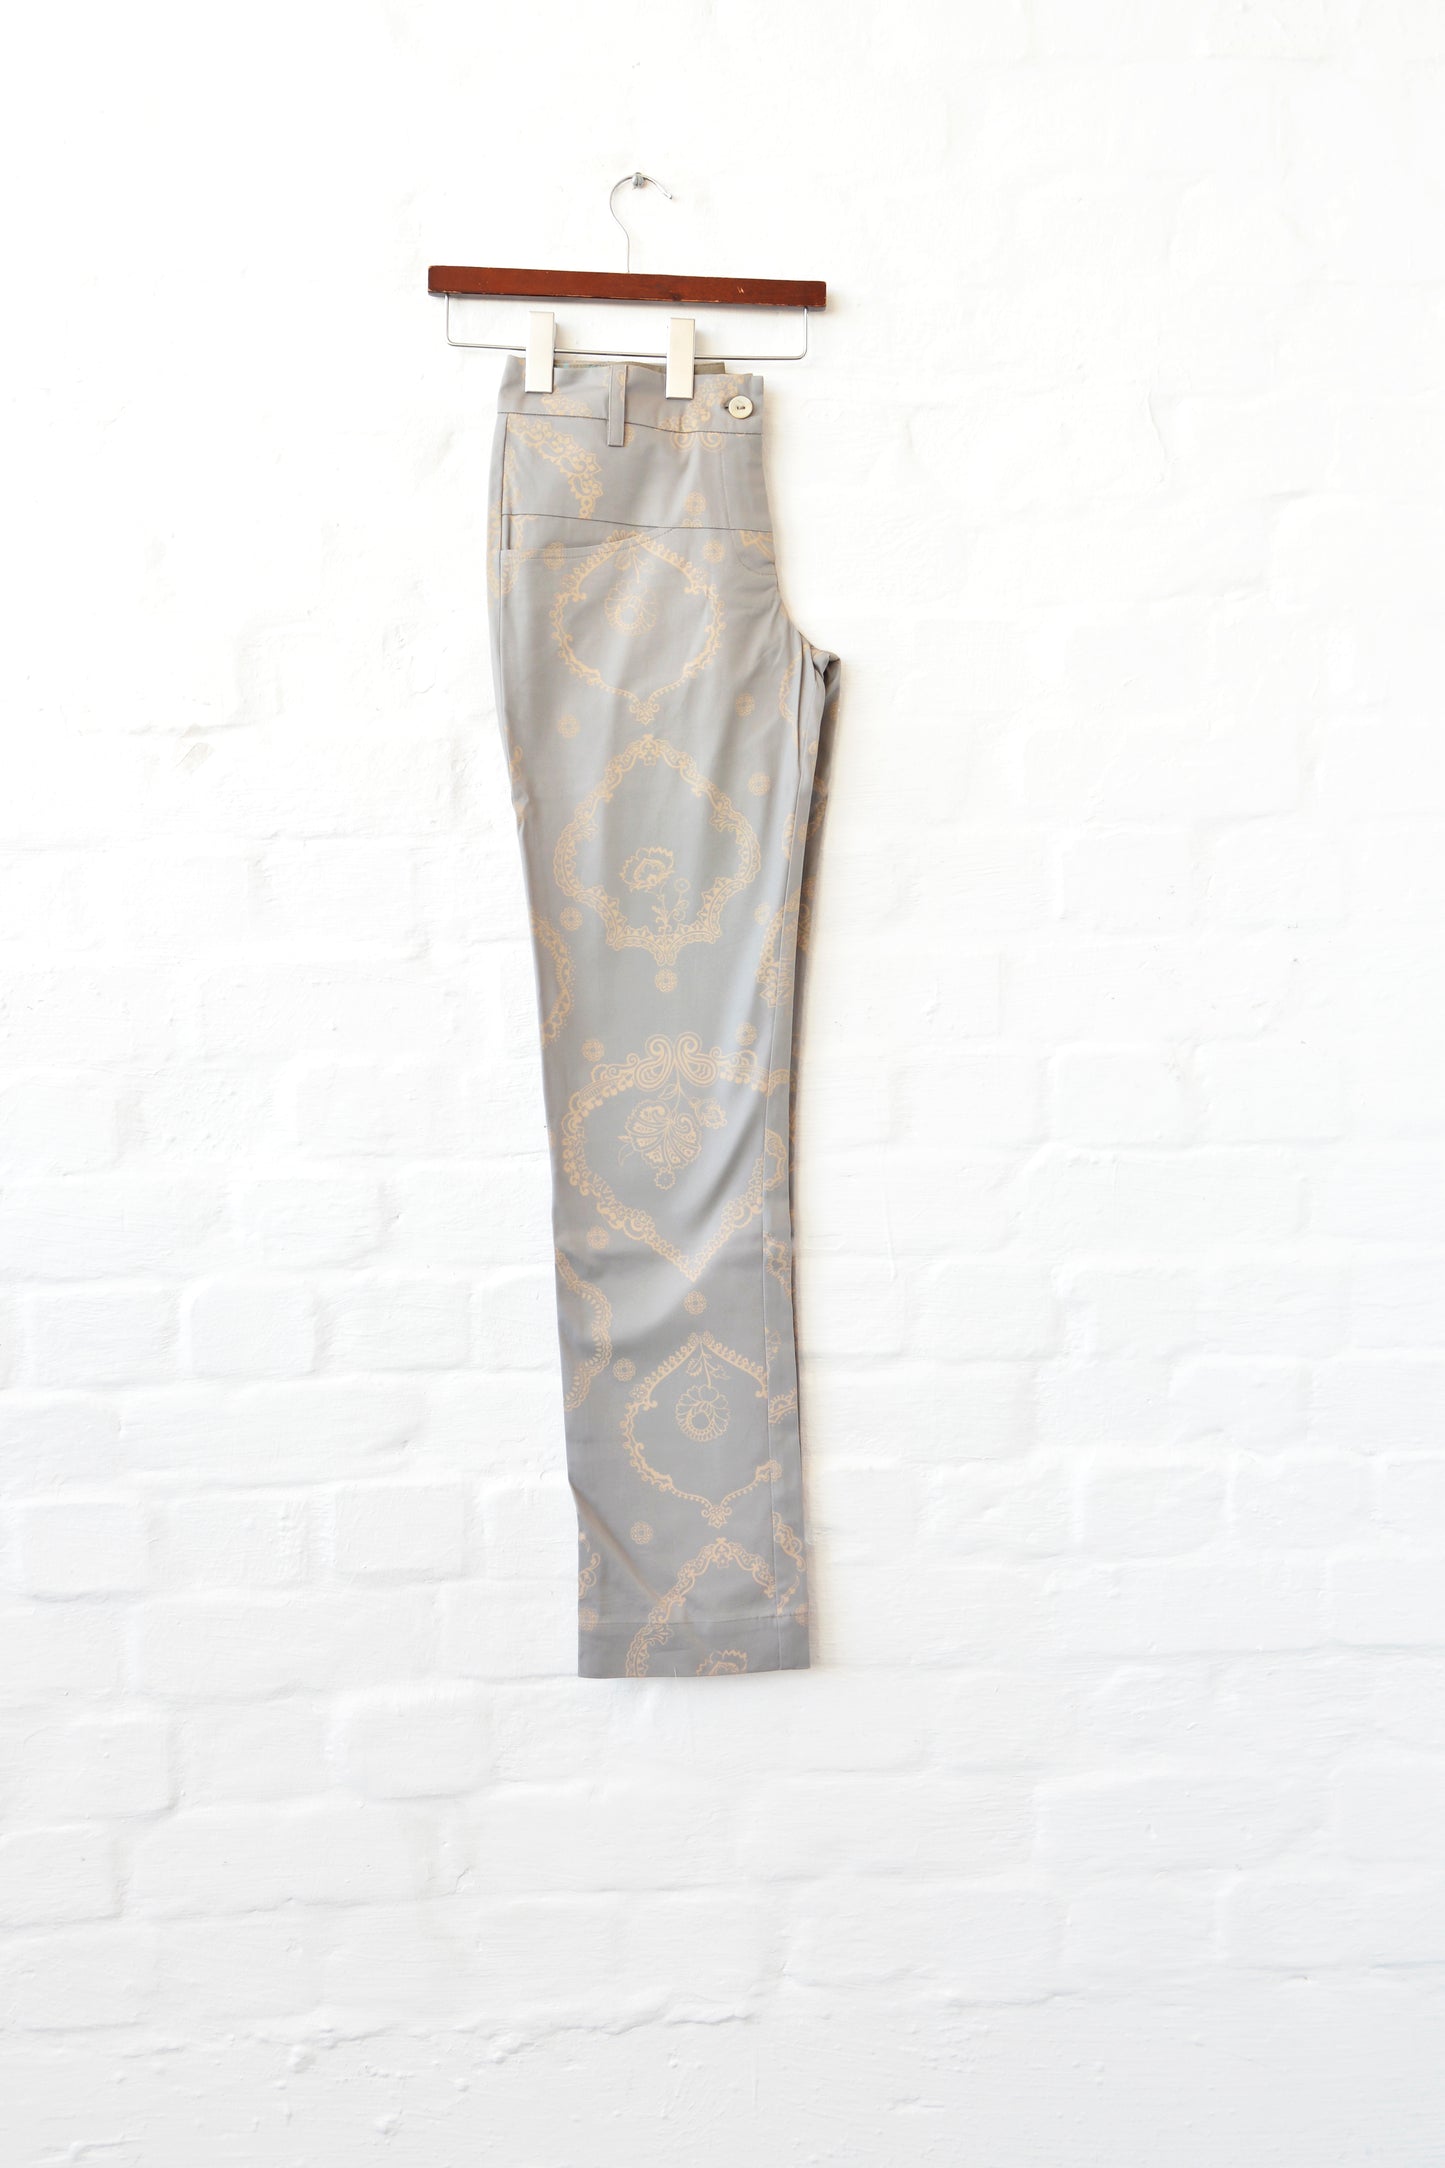 Ipanema trousers in taupe Arabian Nights size 32